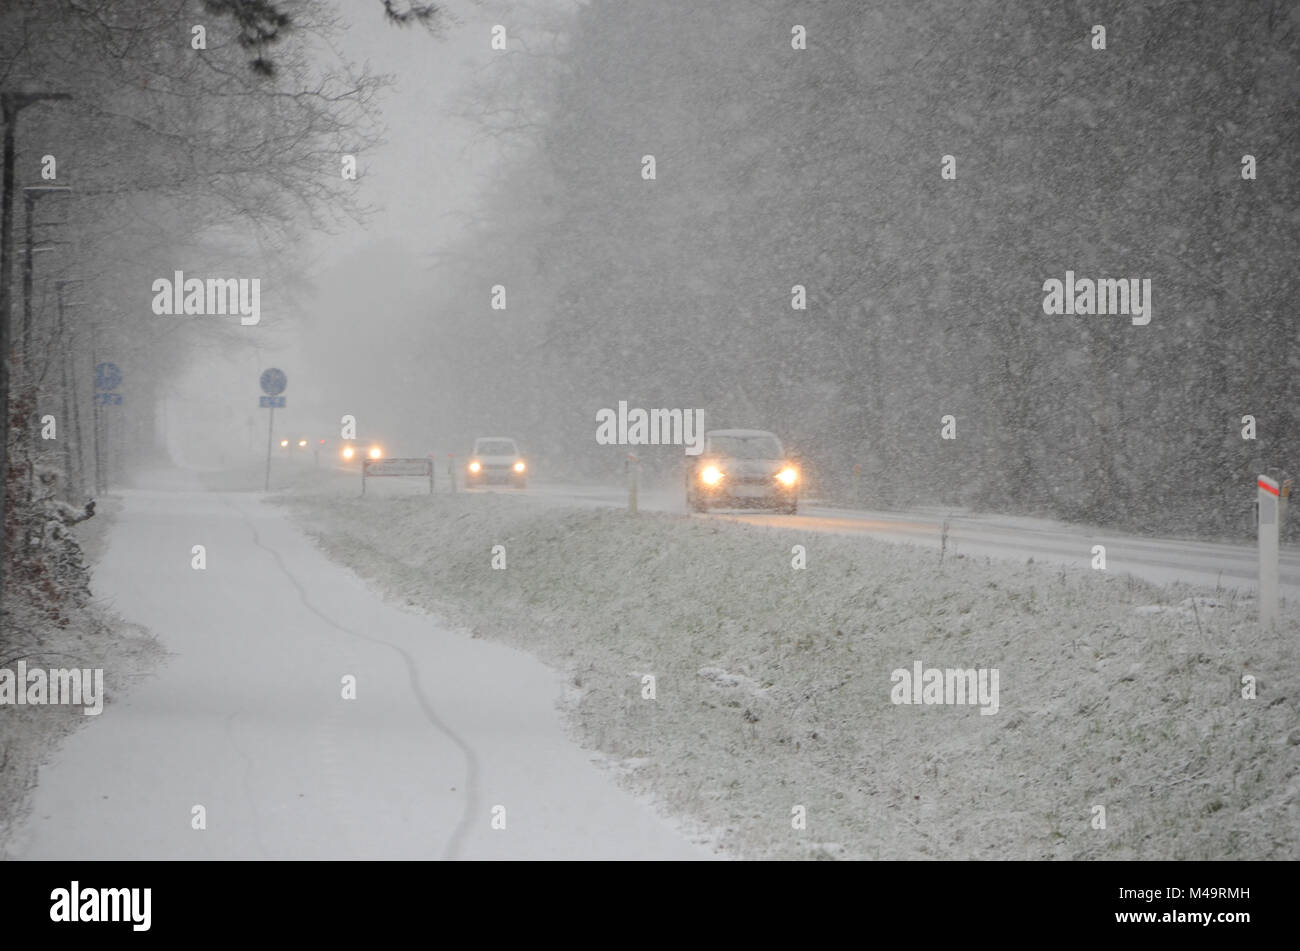 Spärlicher Verkehr langsam, auf einer Straße bei starkem Schneefall, verminderter Sicht verursacht. Stockfoto